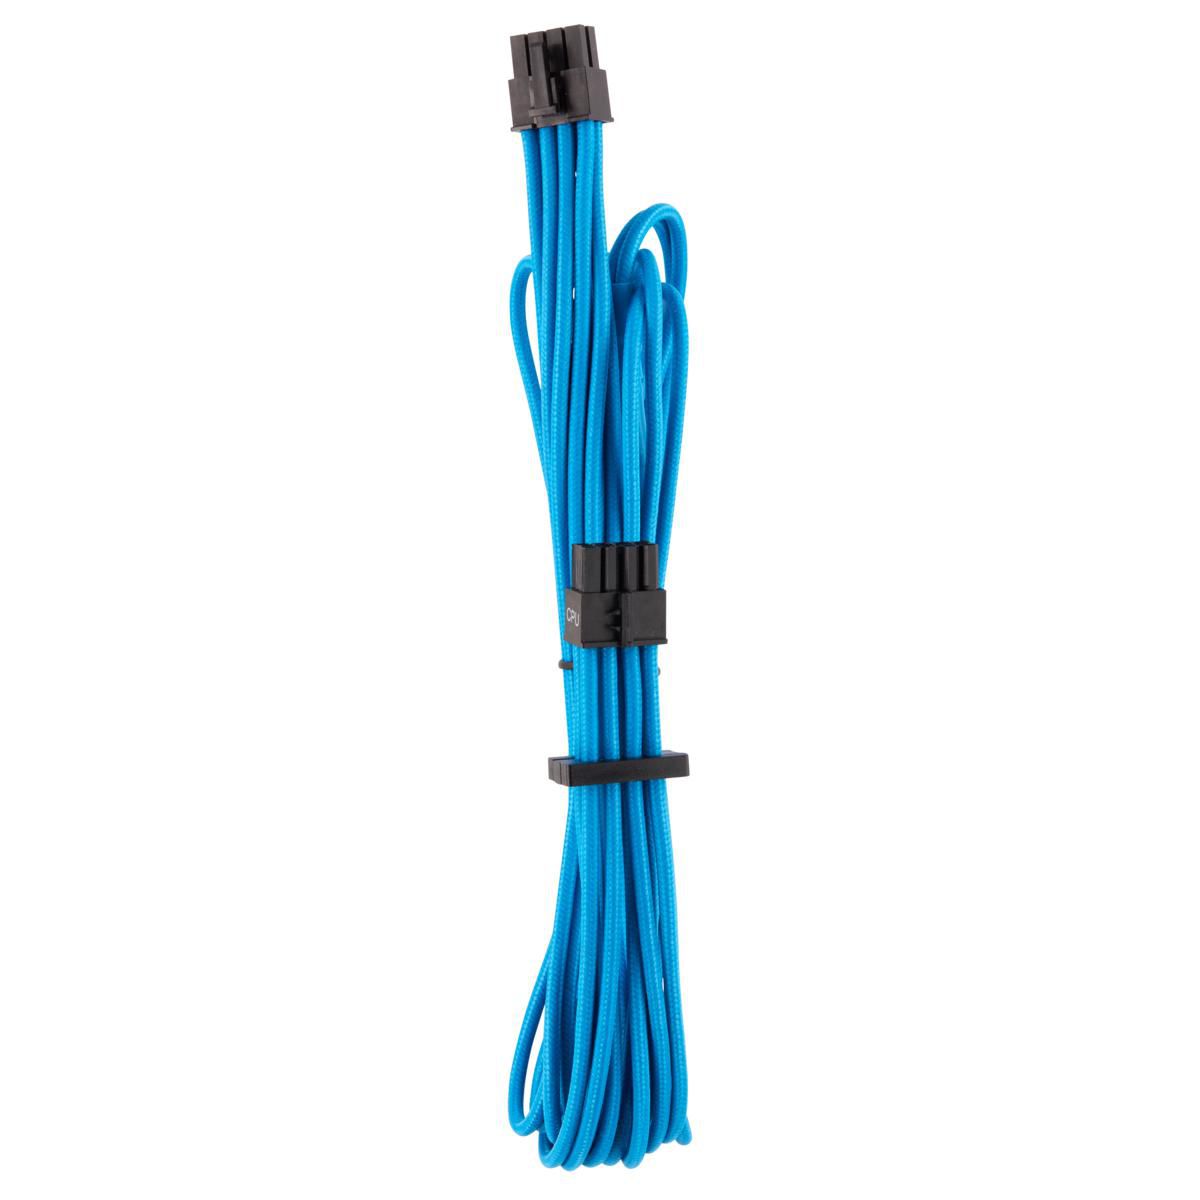 CORSAIR EPS12V CPU Cable blau